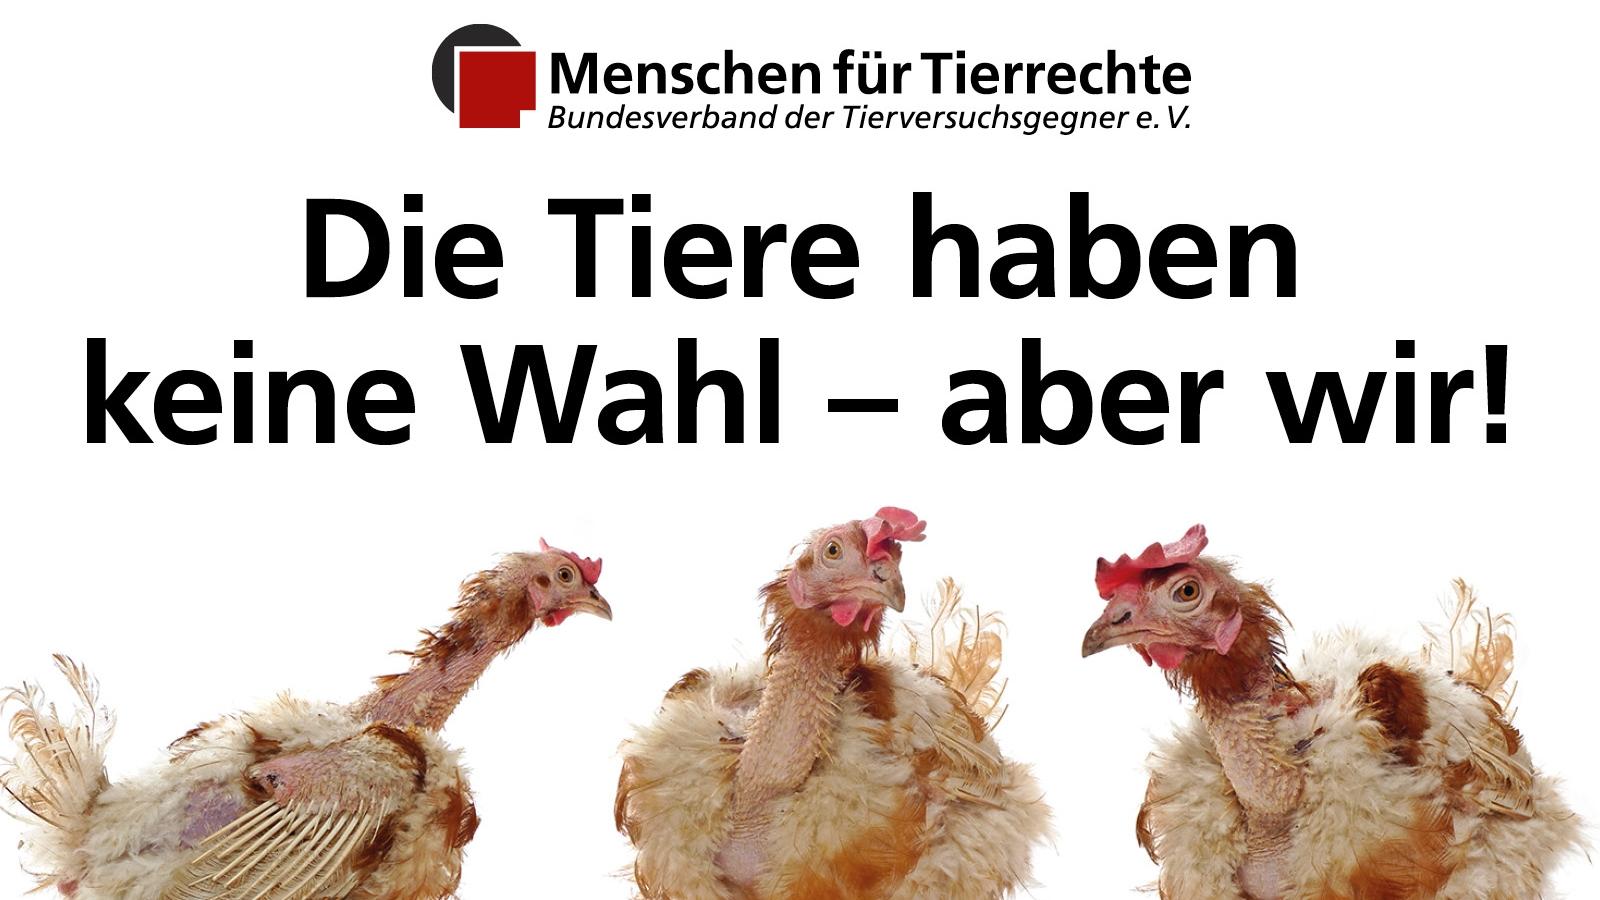 Foto von Legebatteriehennen, Logo von Menschen für Tierrechte, Aufschrift "Die Tiere haben keine Wahl - aber wir!"